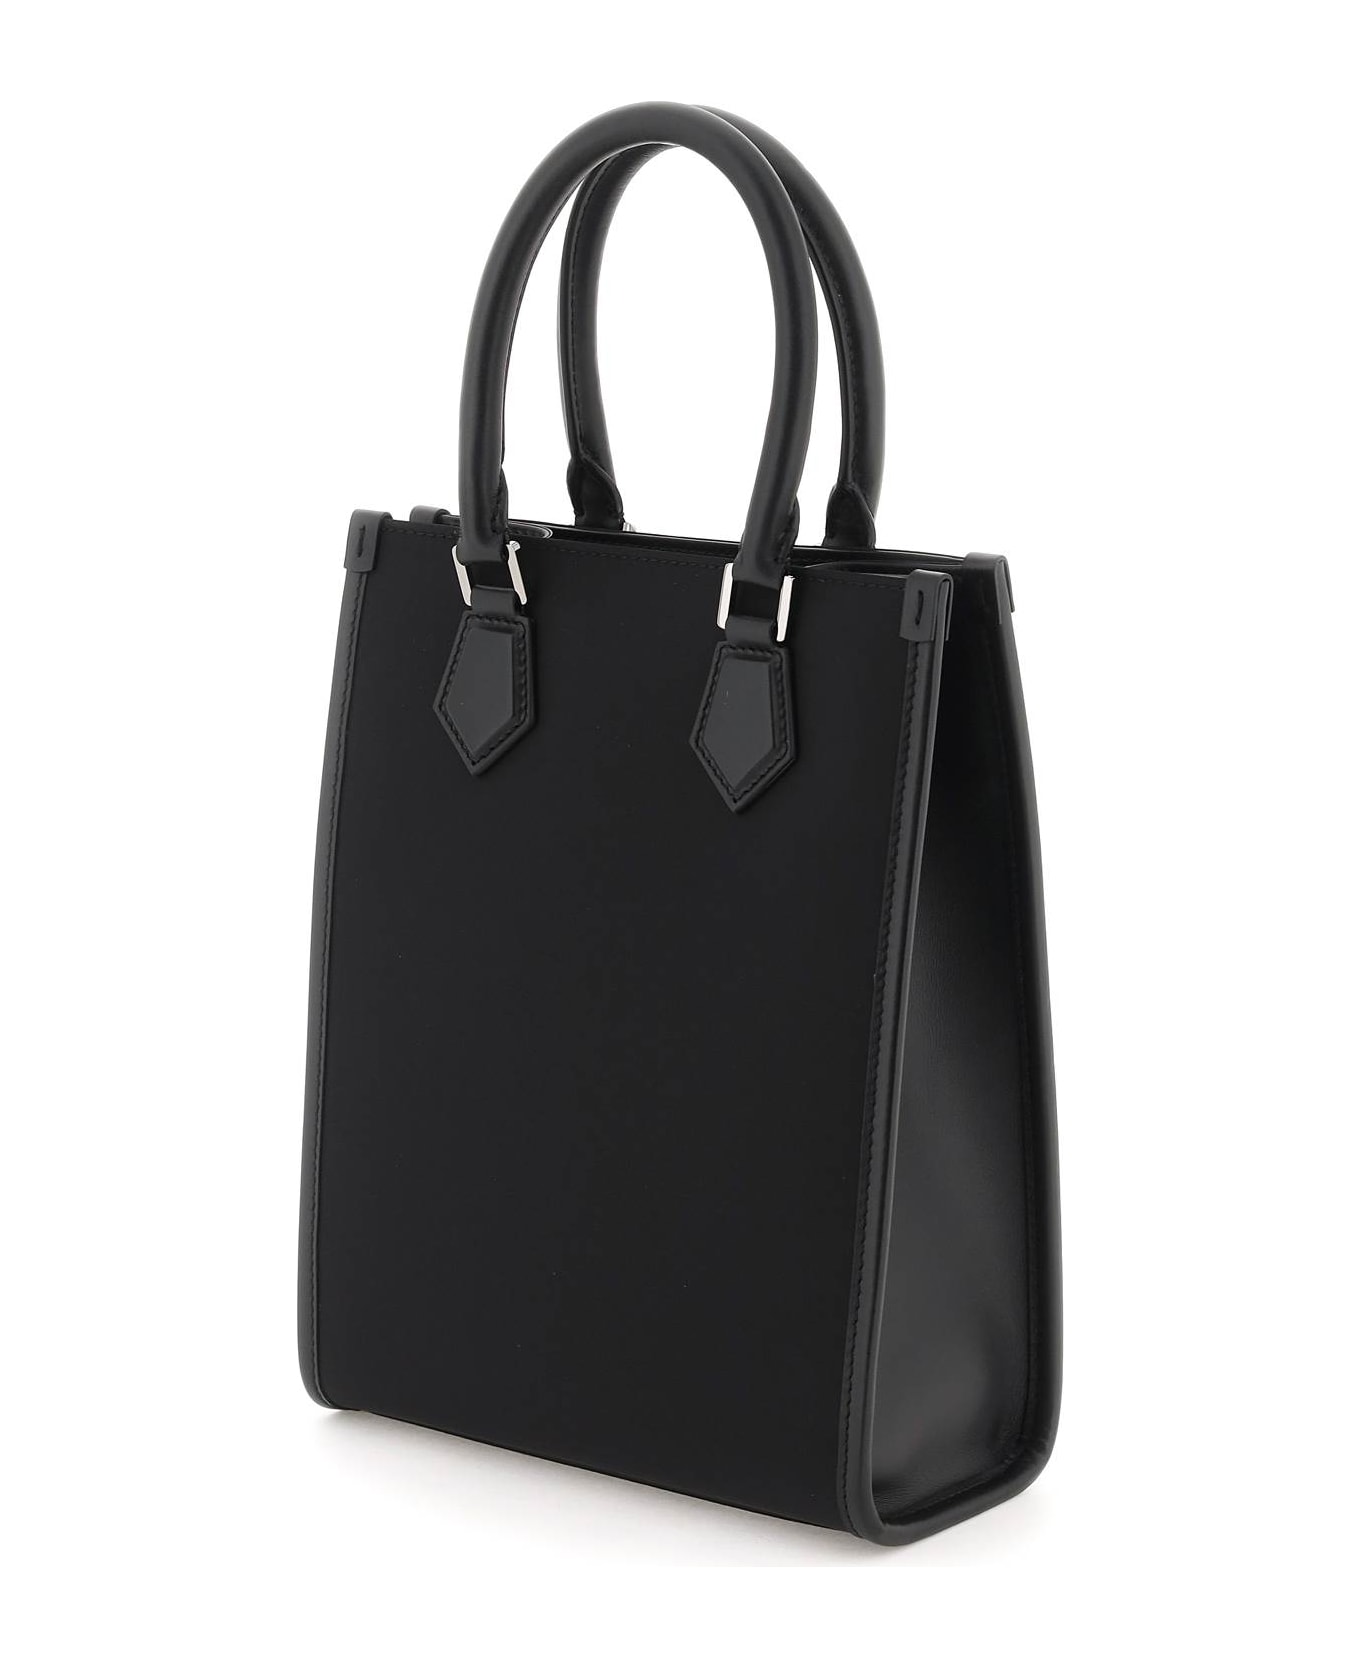 Dolce & Gabbana Small Nylon Tote Bag With Logo - Nero/nero トートバッグ